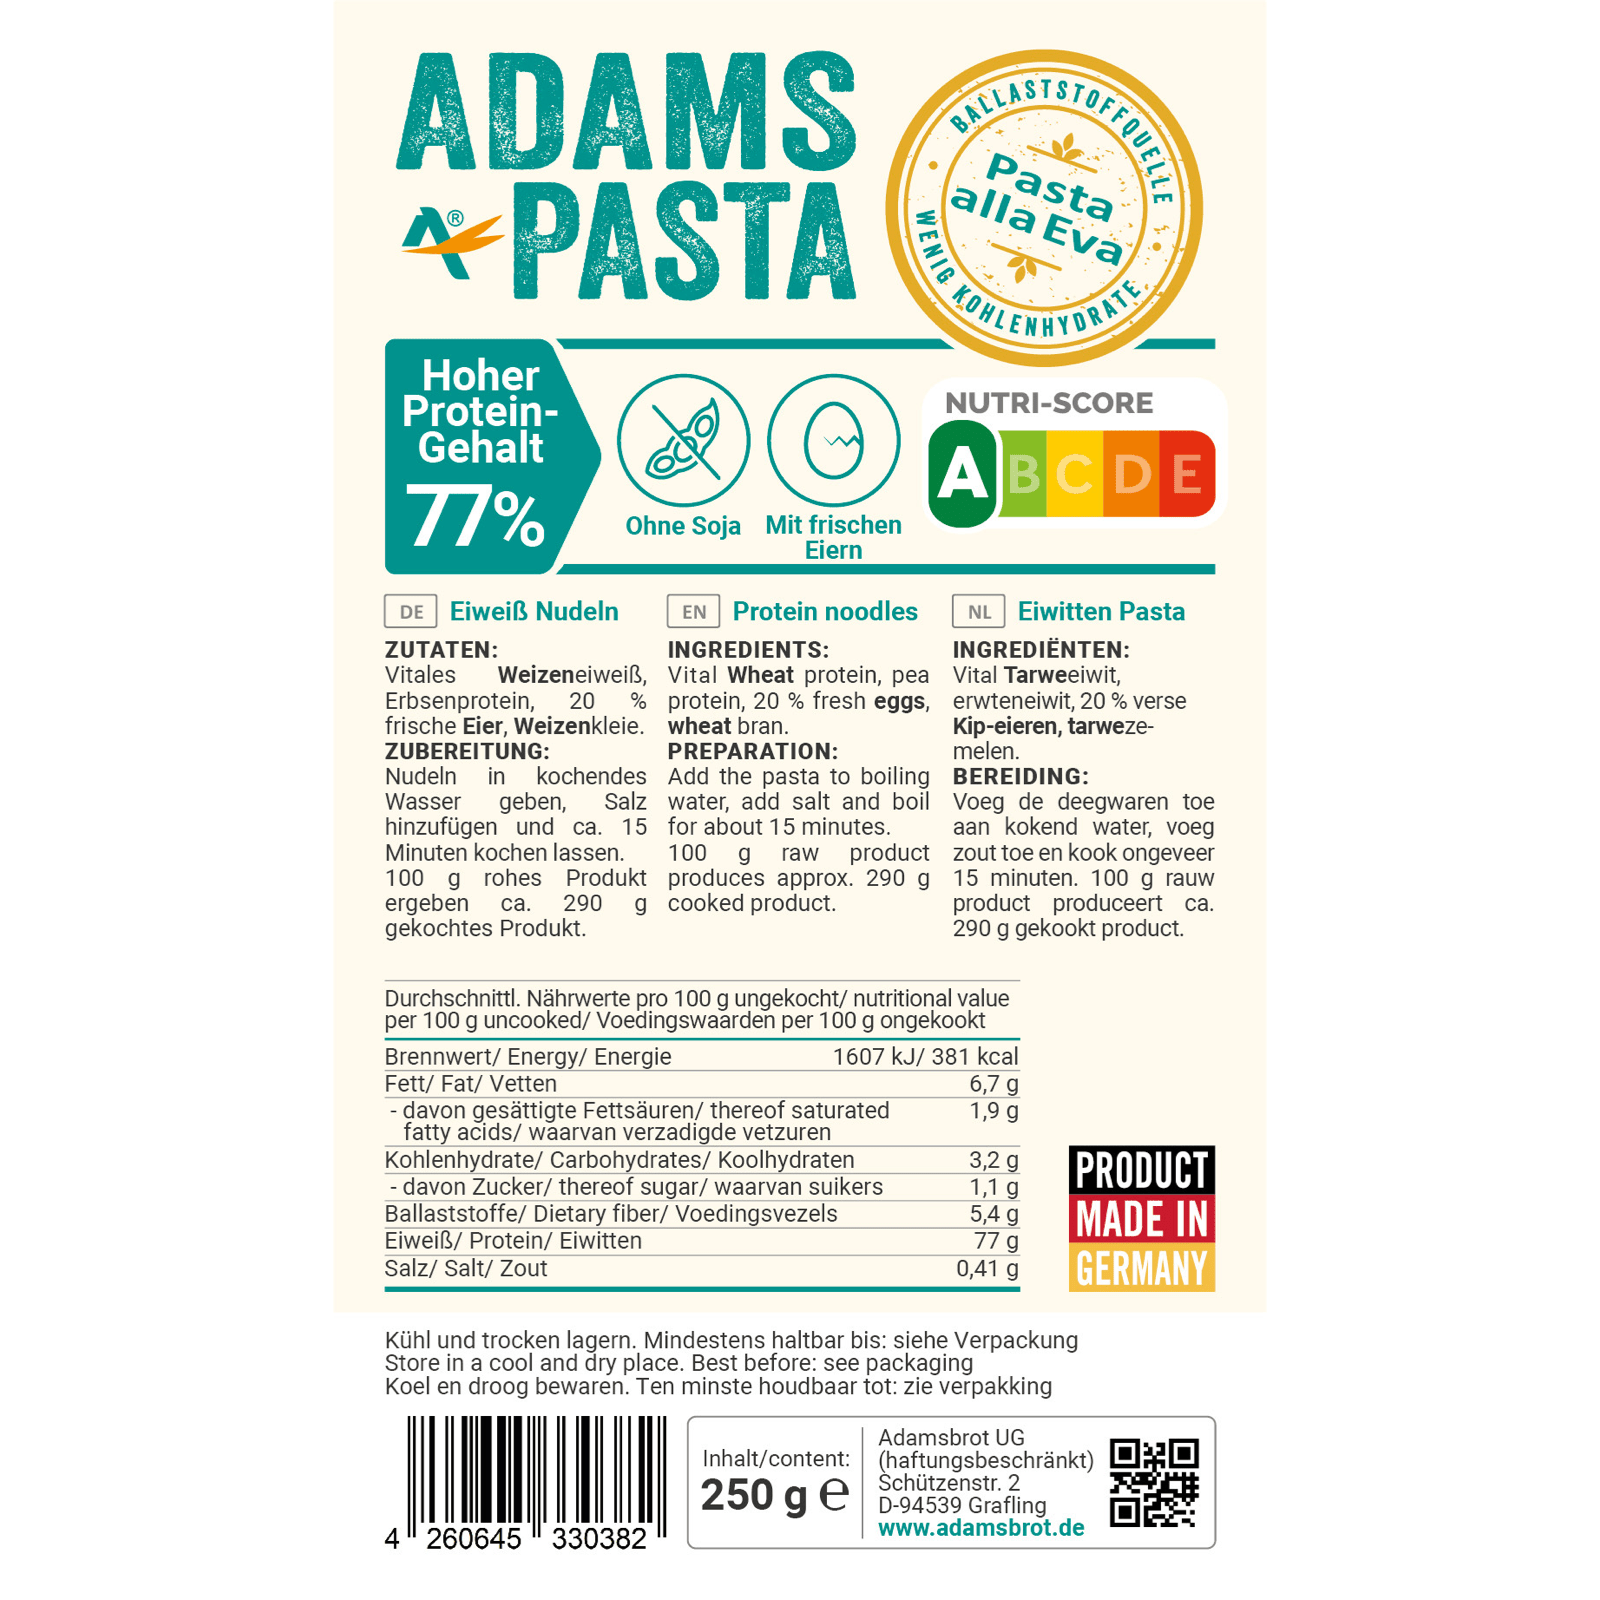 Bild des Etiketts von unserem eiweißreichen, ketogenen und sojafreien Produkt, mit dem Namen "Pasta alla Eva"